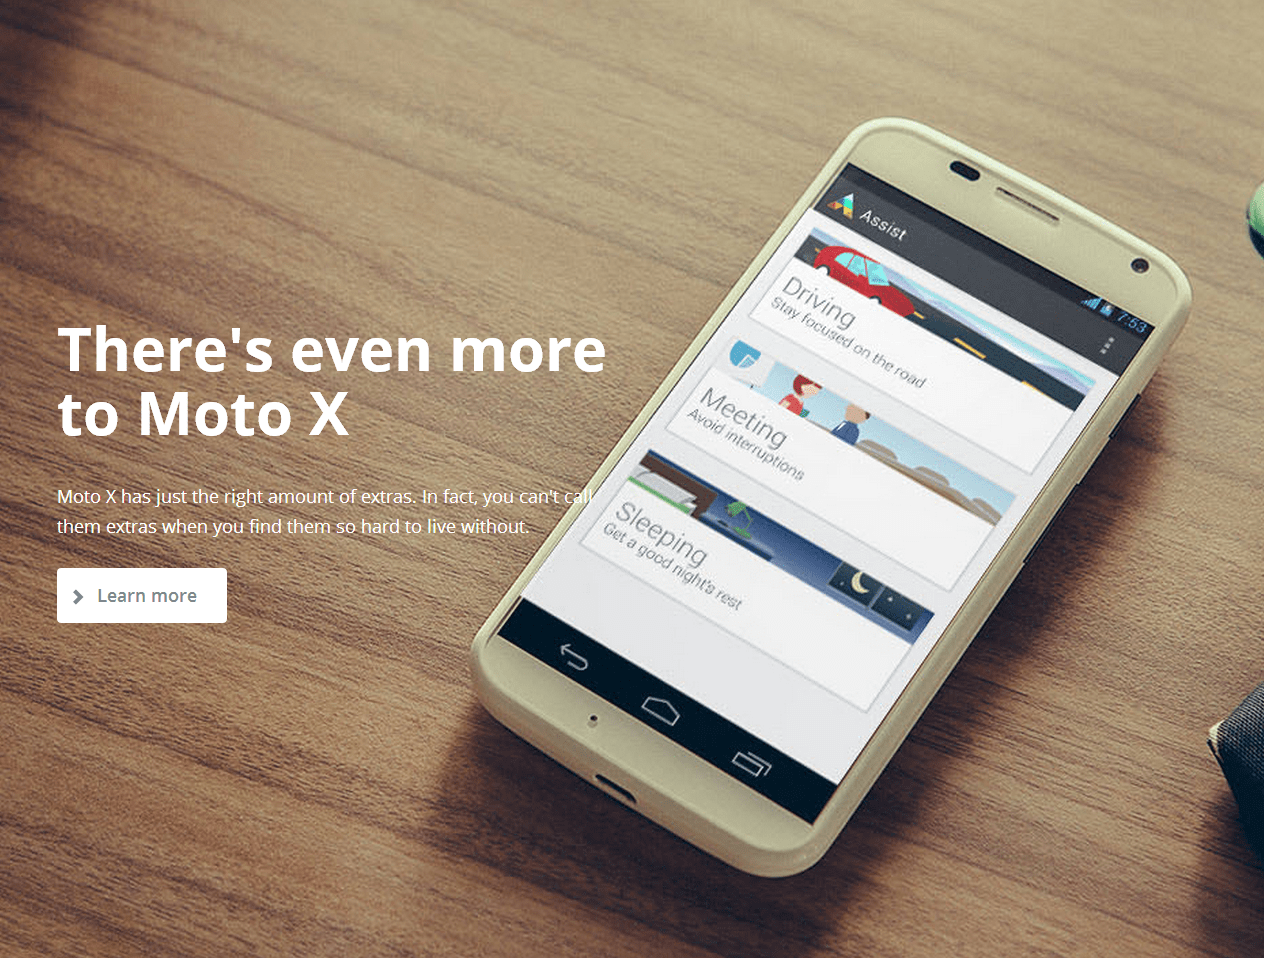 หน้า Landing Page ของ Moto X